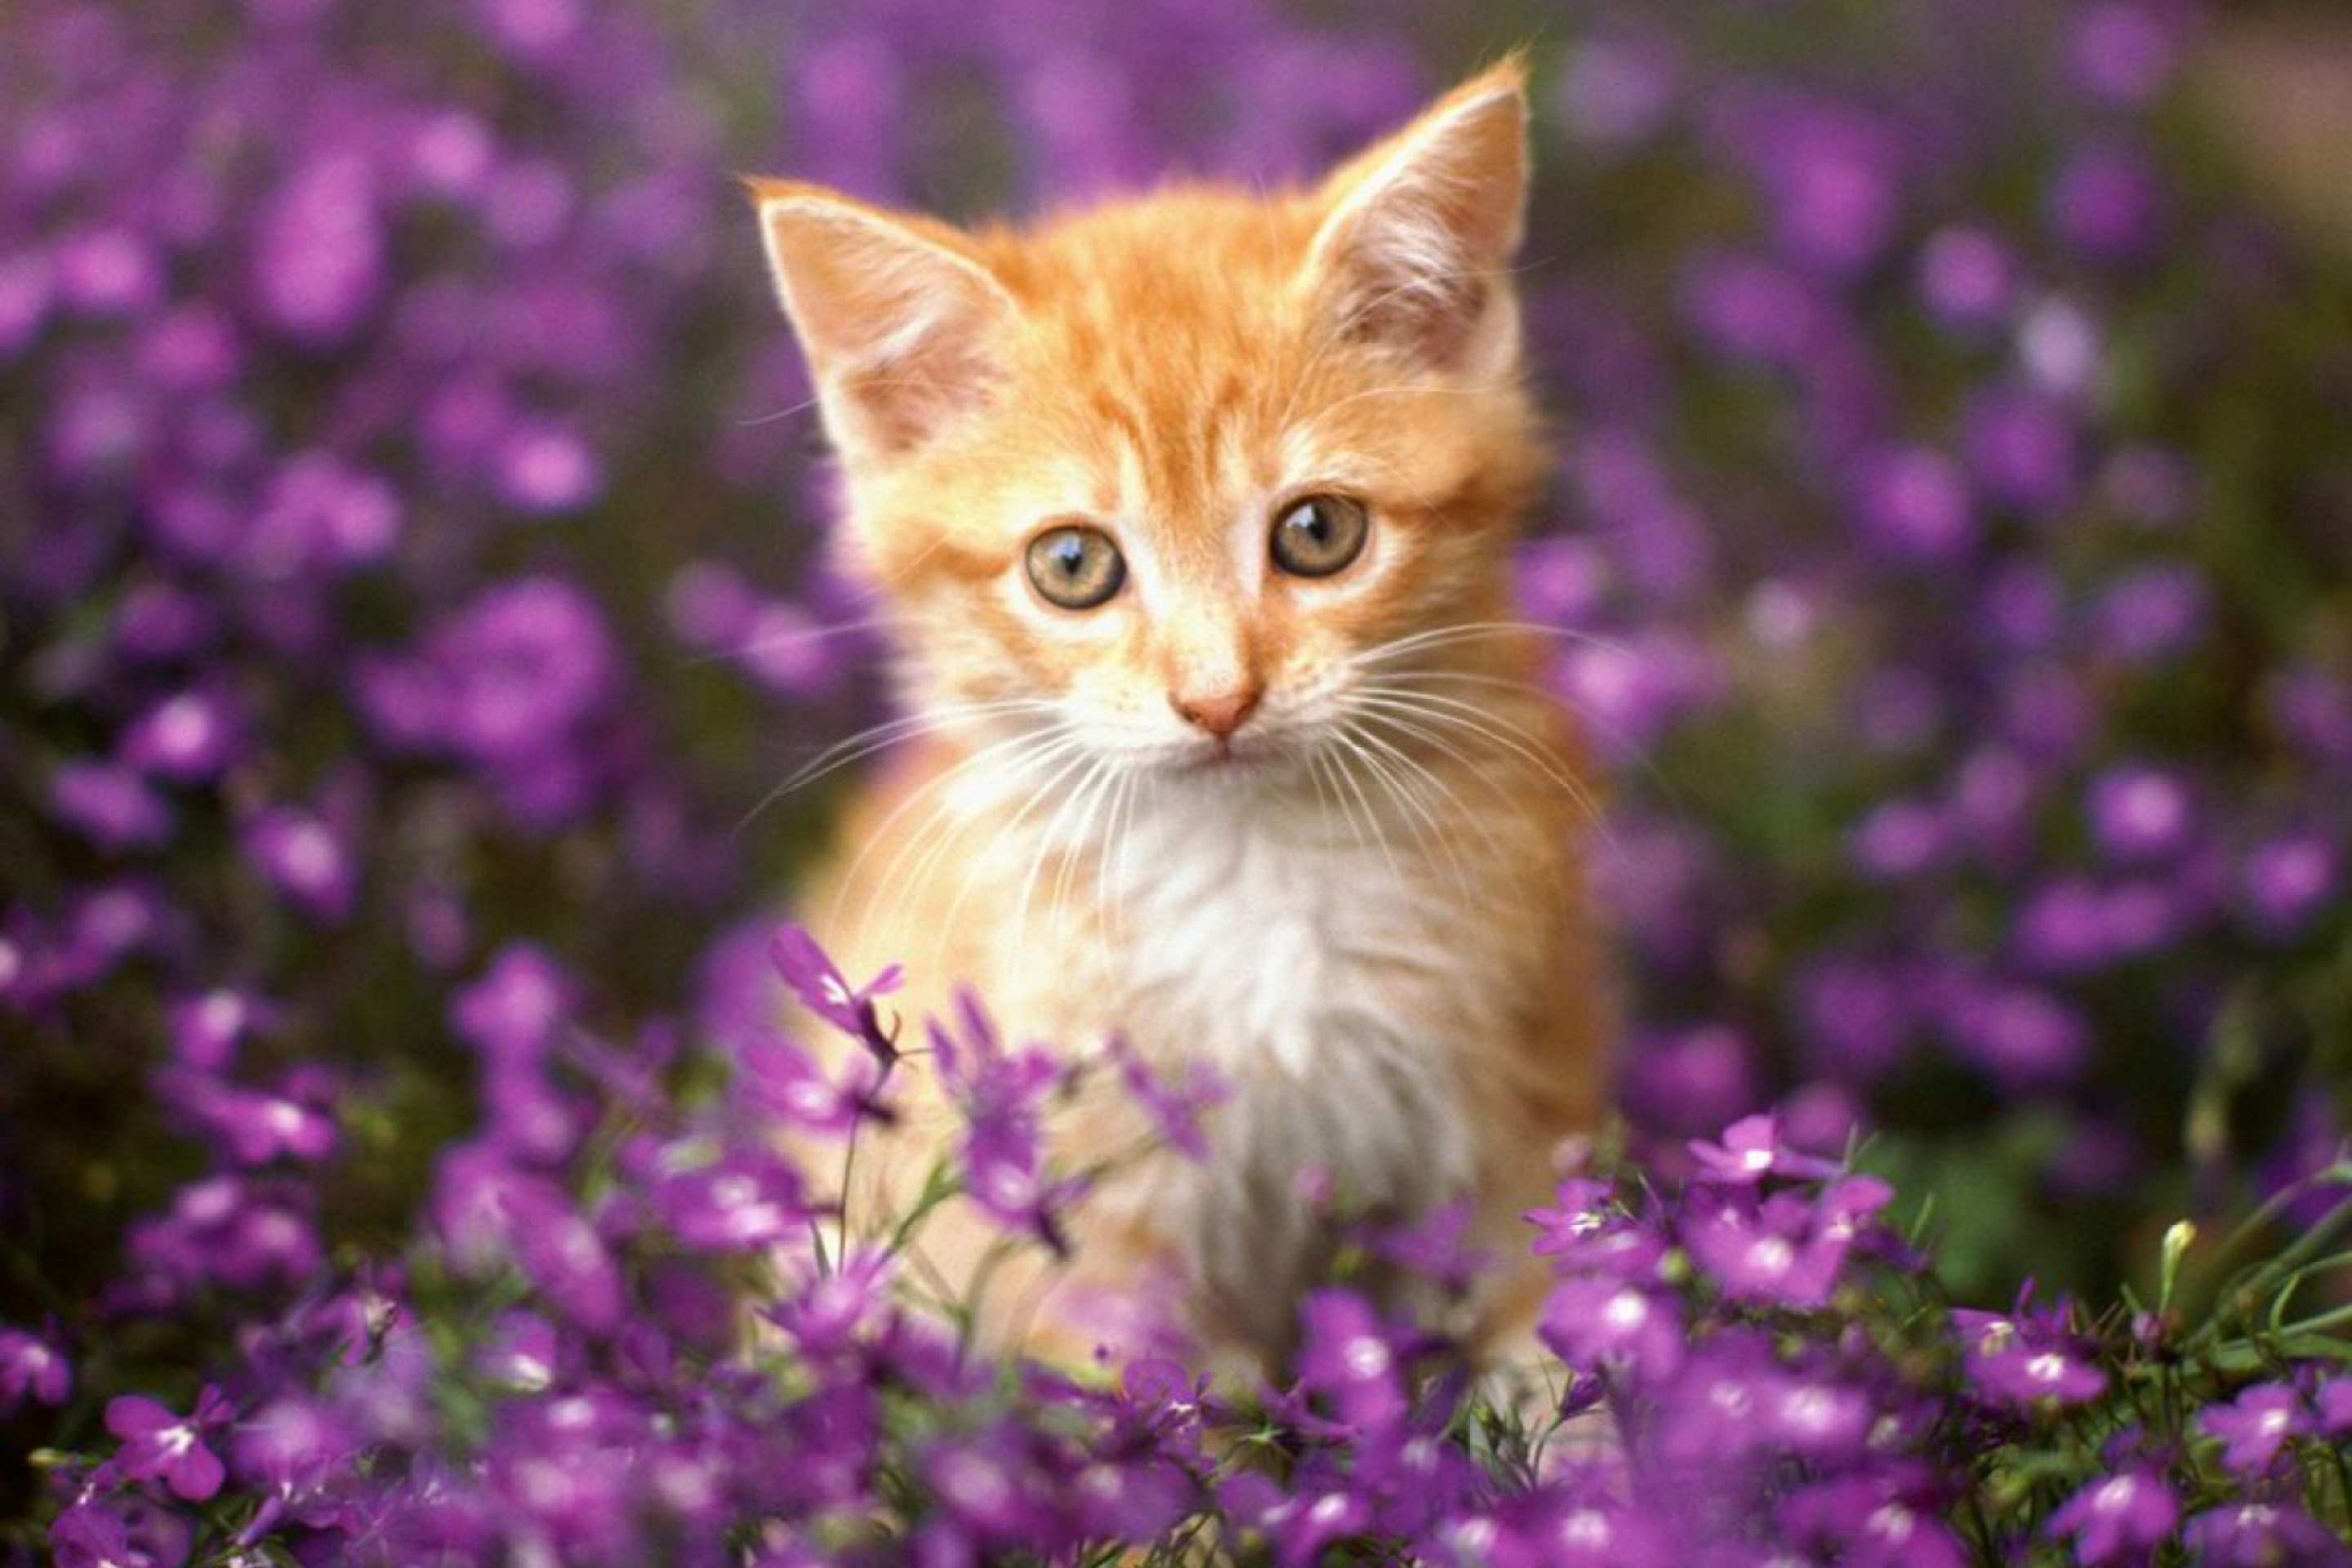 Sweet Kitten In Flower Field wallpaper 2880x1920